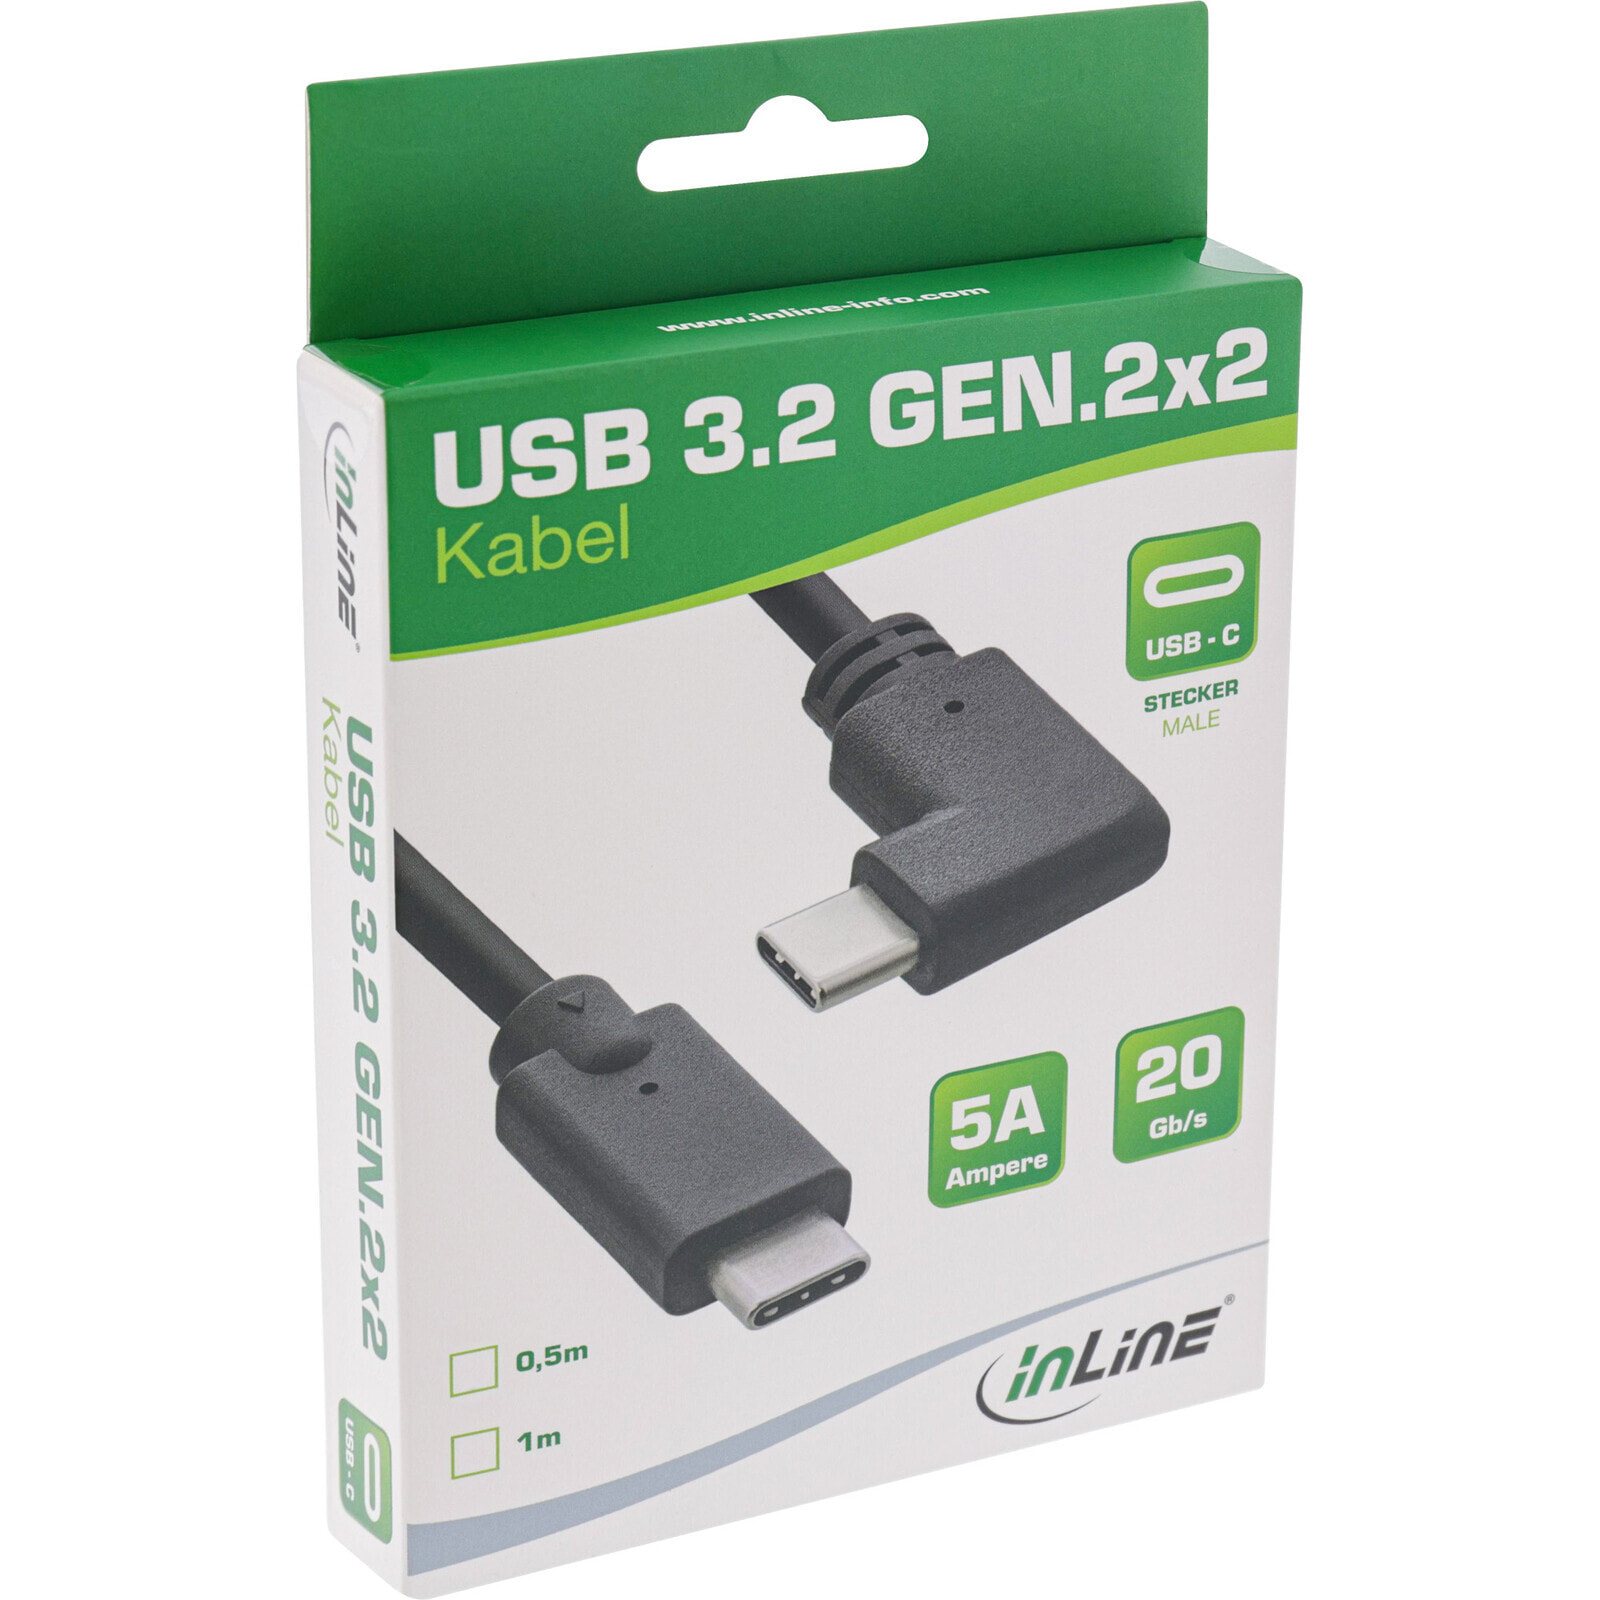 InLine USB 3.2 Gen.2 cable - USB Type-C male/male angled - black - 1m - 1 m - USB C - USB C - USB 3.2 Gen 2 (3.1 Gen 2) - 20000 Mbit/s - Black